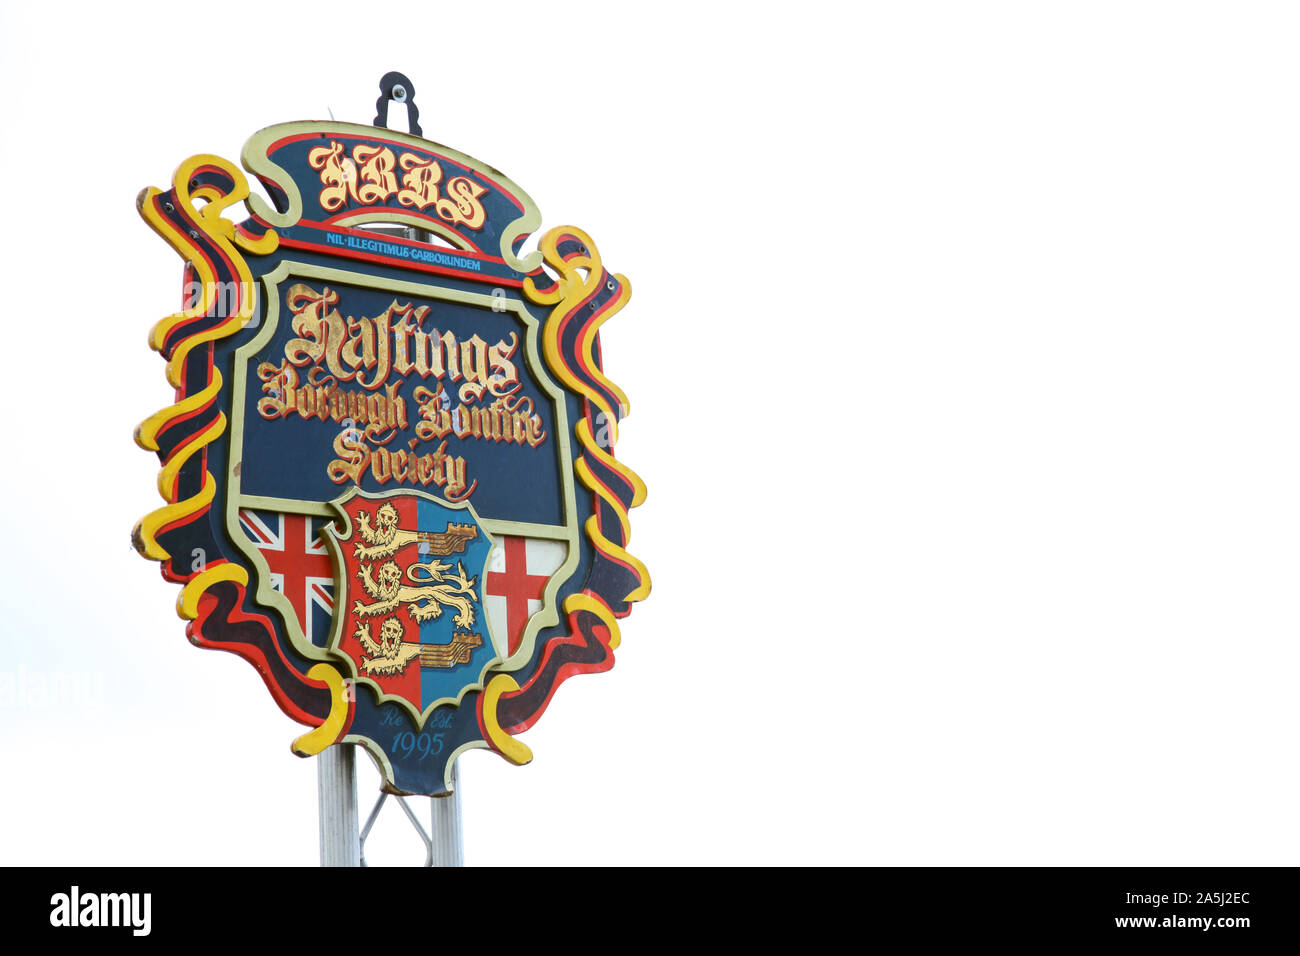 Les armoiries de la Hastings Borough Bonfire Society (HBBS) avec la devise latine factice 'nil illégitius carborundem', octobre 2019 avec espace de copie Banque D'Images